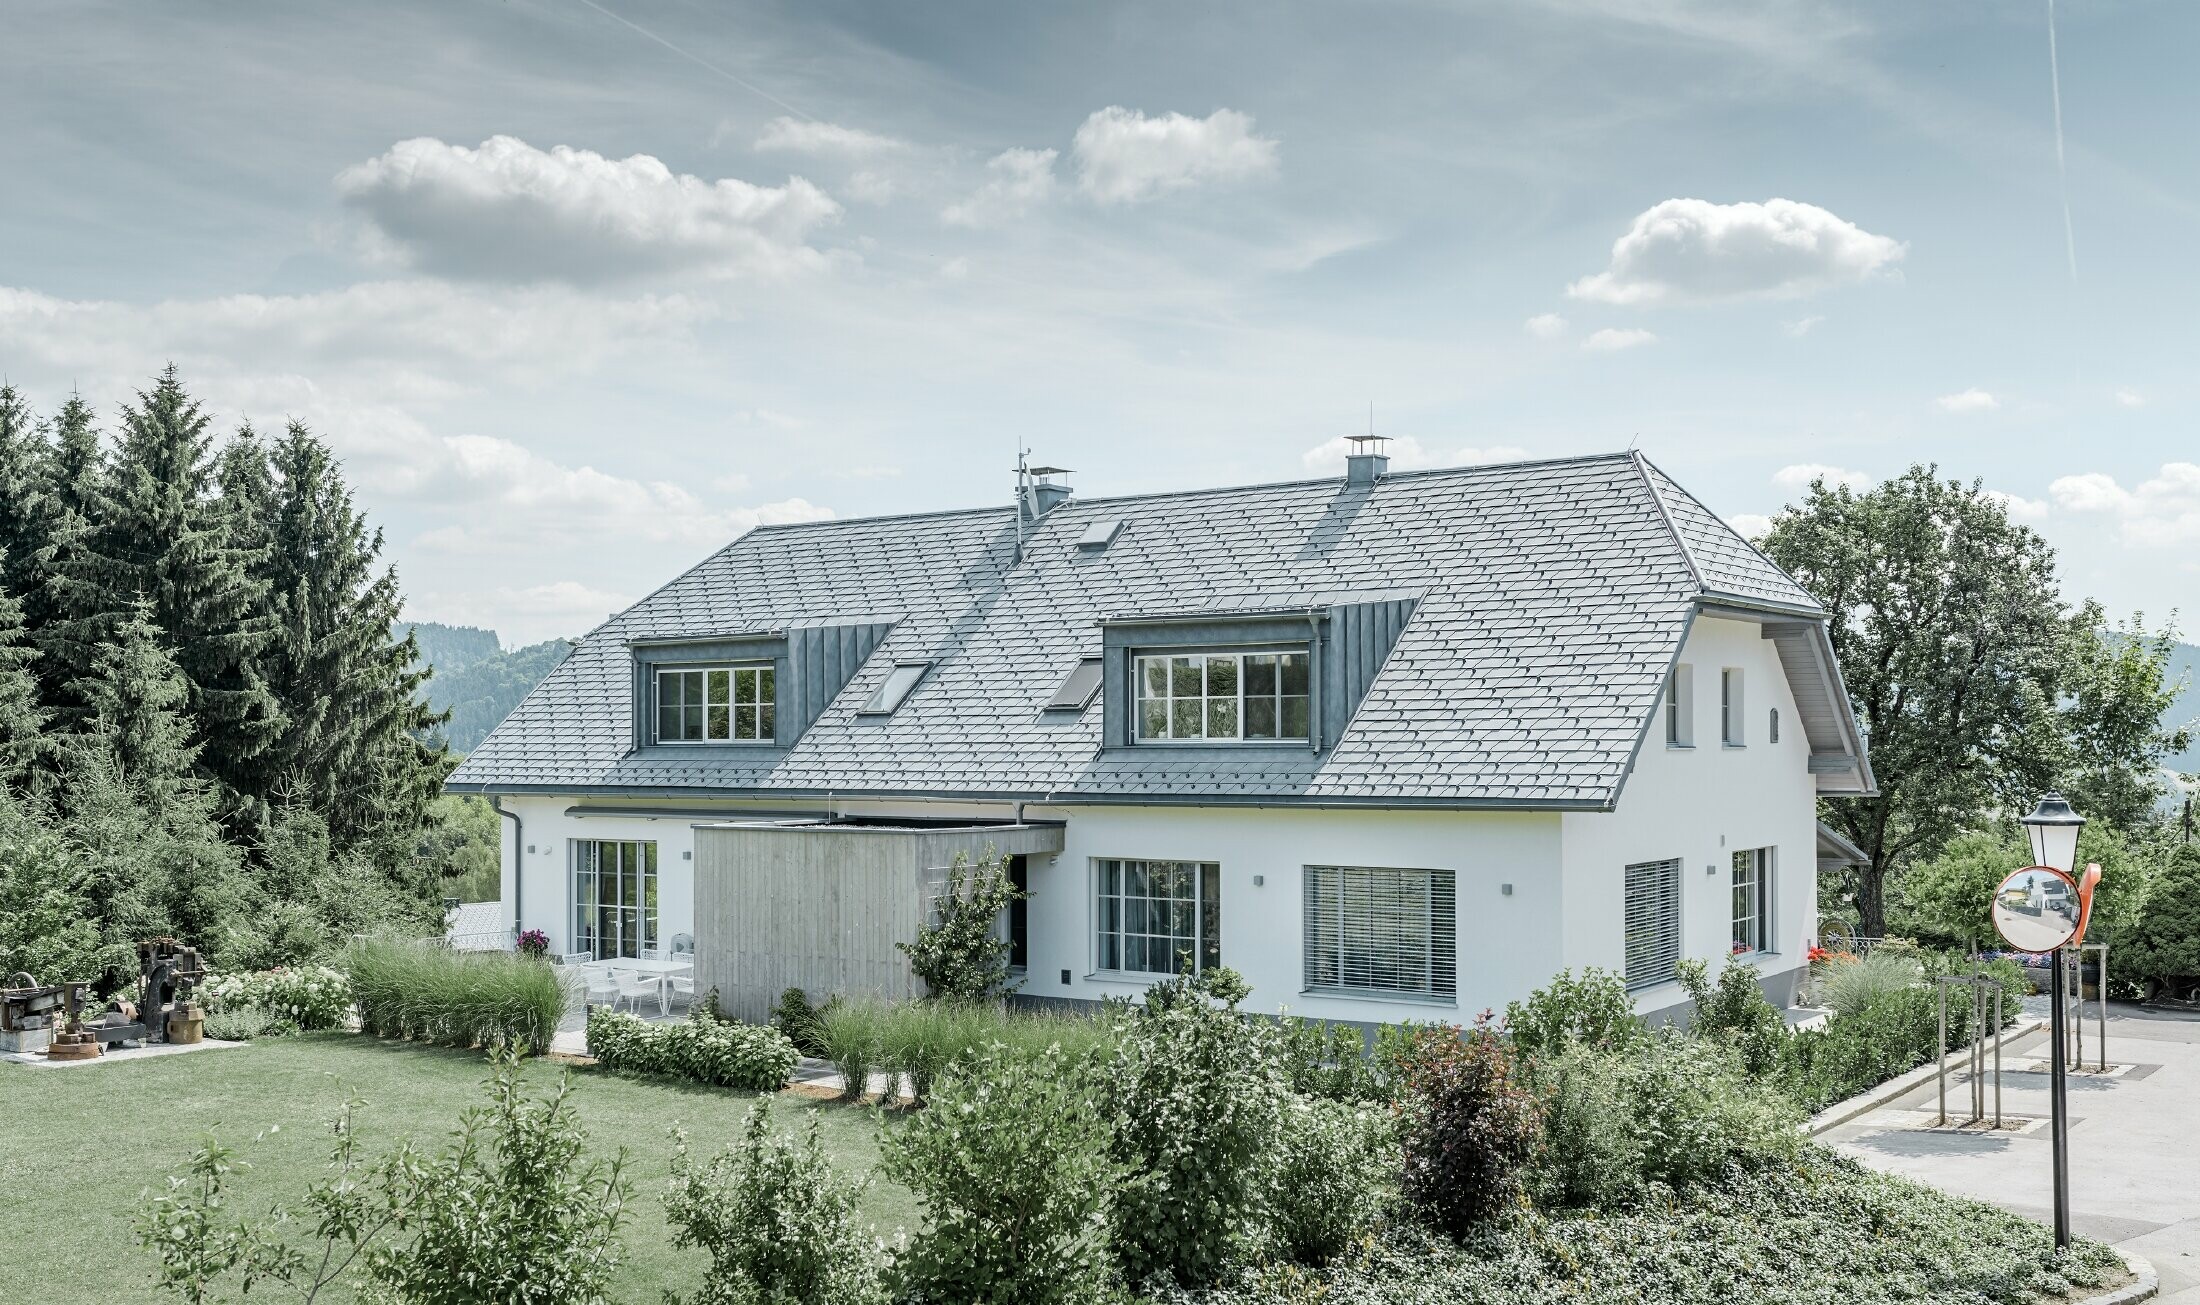 Gaube des neu sanierten Einfamilienhauses mit der PREFA Dachschindel in Steingrau. Die Gaube ist mit Prefalz (Stehfalz) verkleidet.